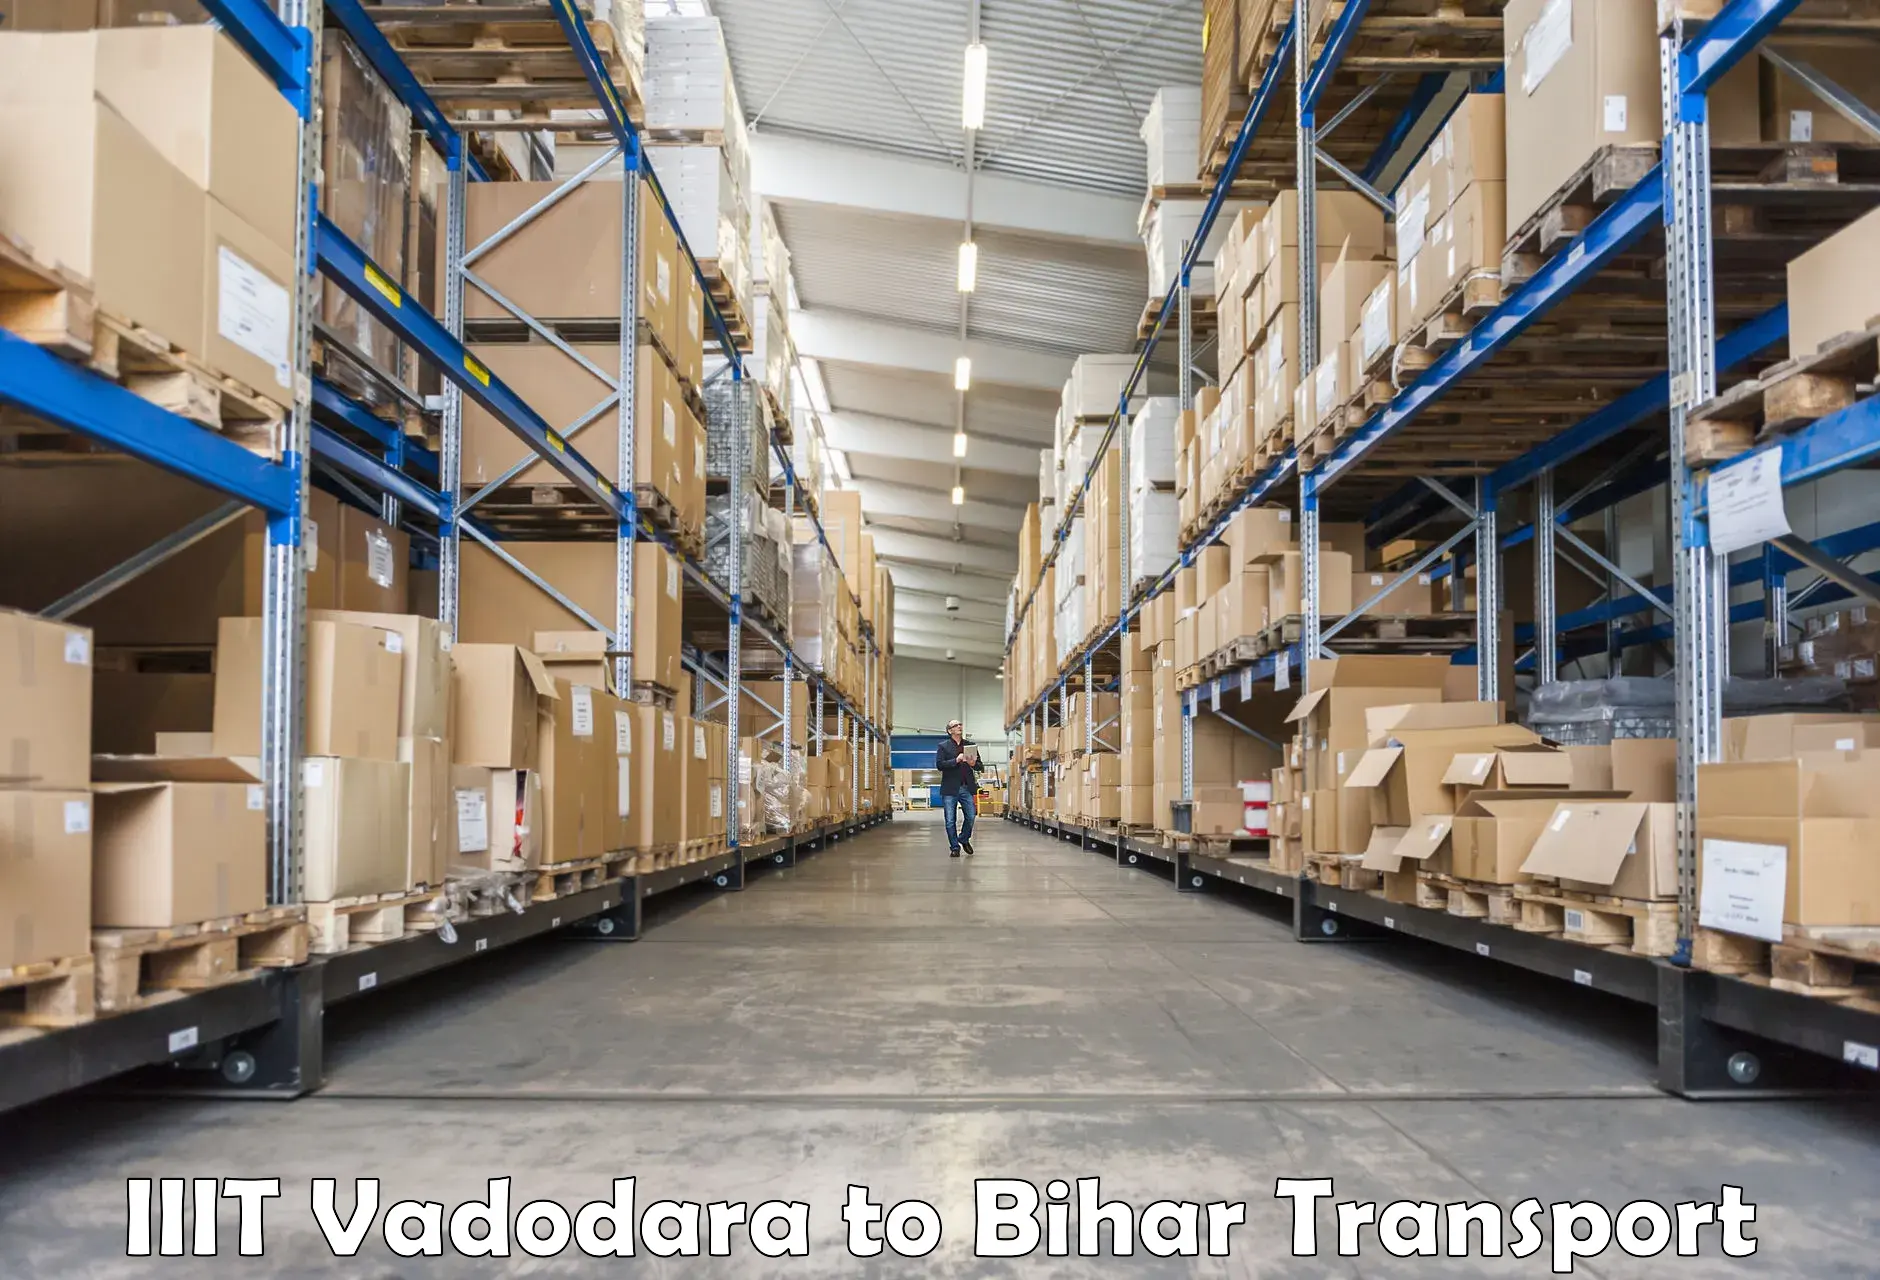 Pick up transport service IIIT Vadodara to Simri Bakthiyarpur